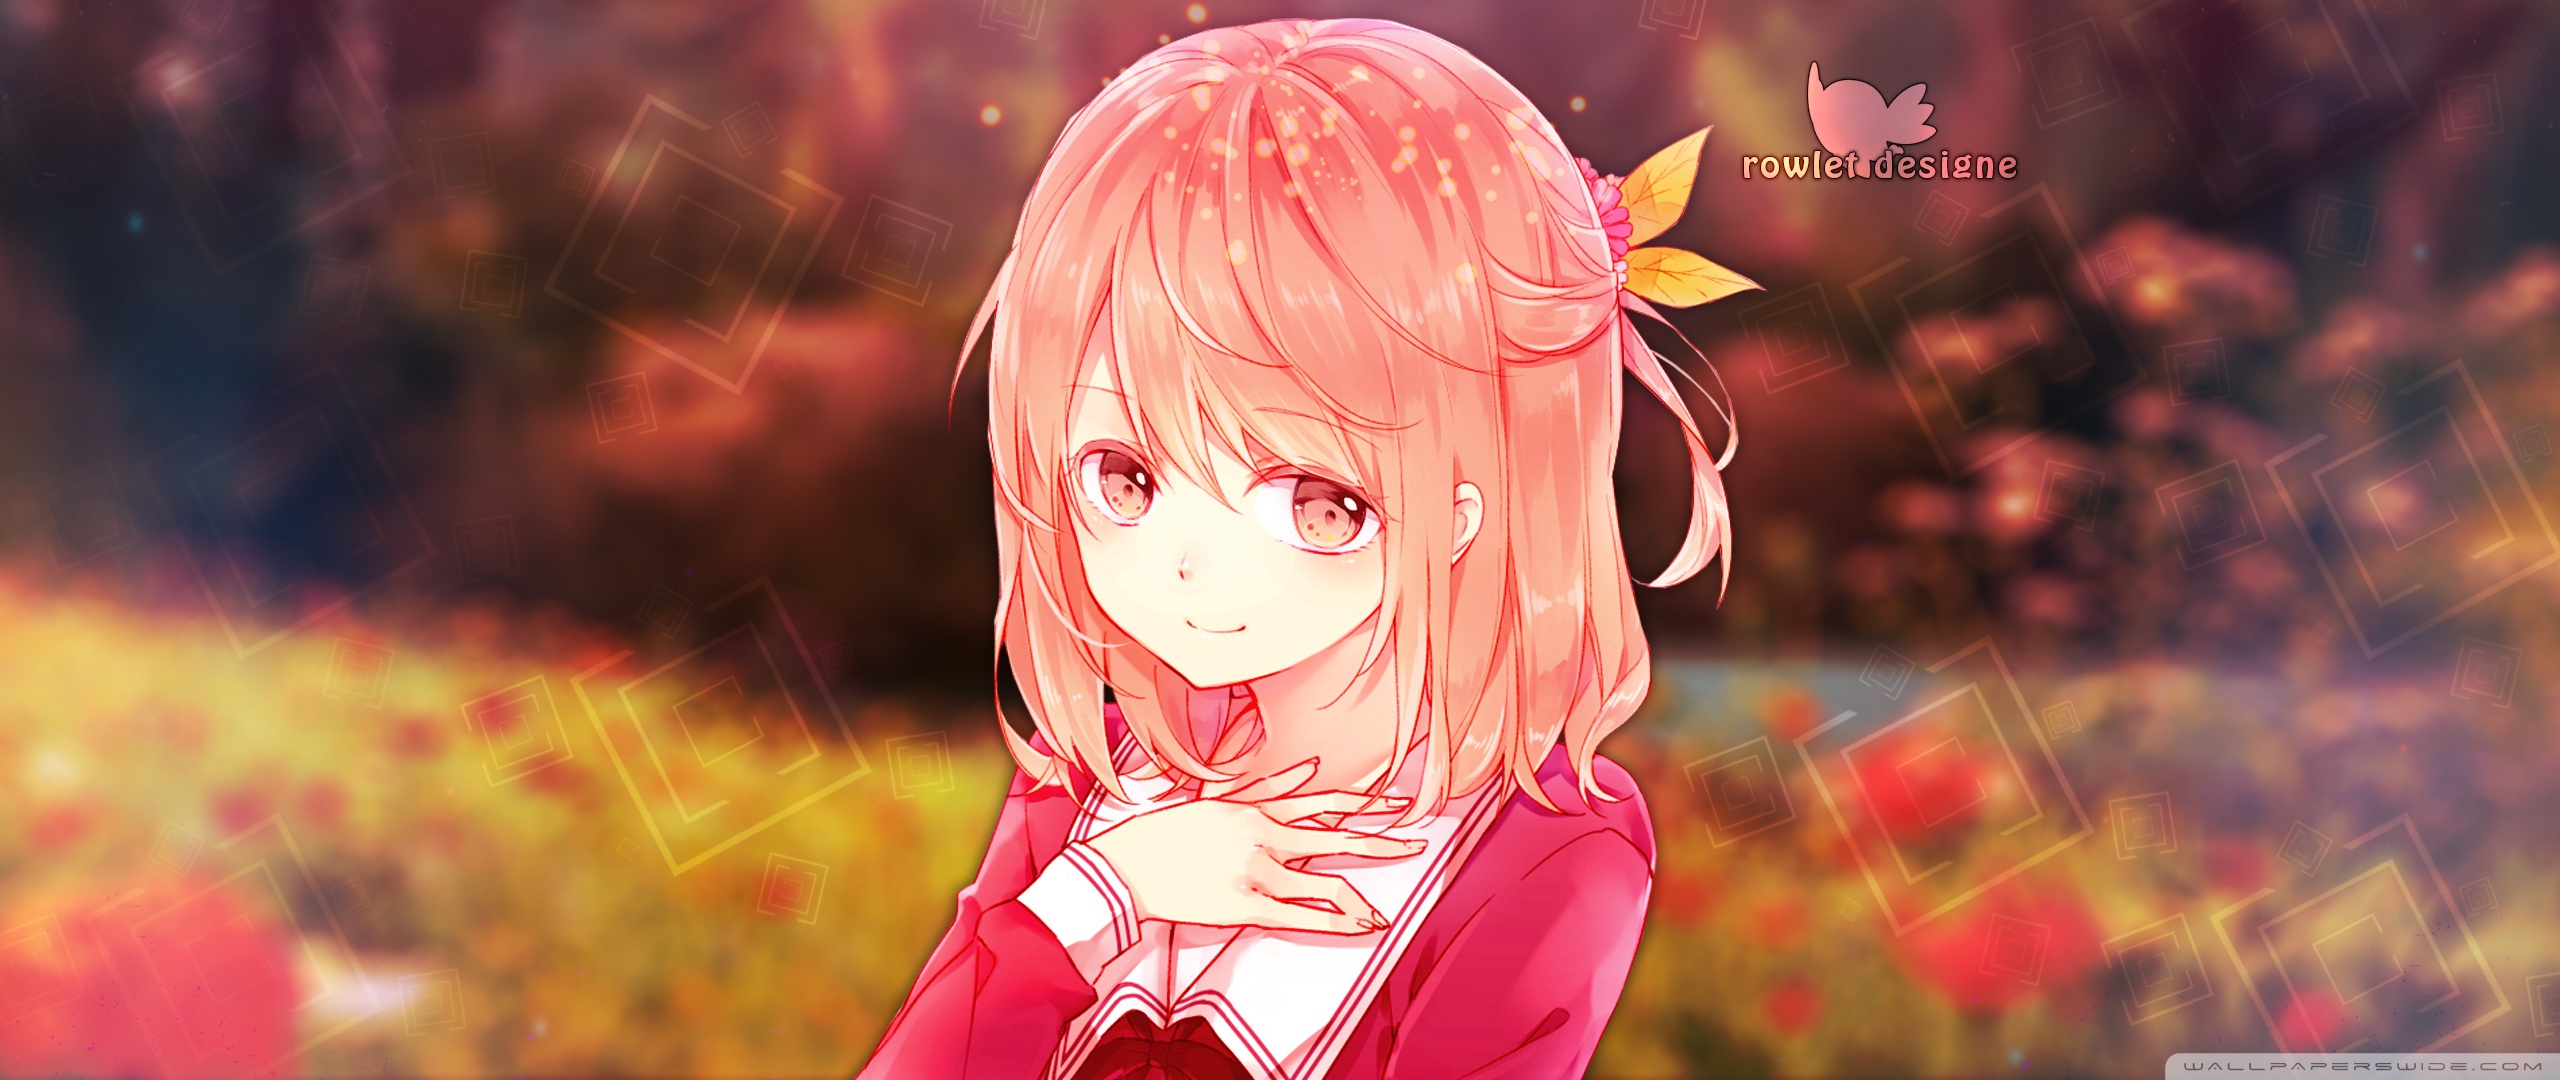 Anime Girl Ultra HD Desktop Background Wallpaper for ...